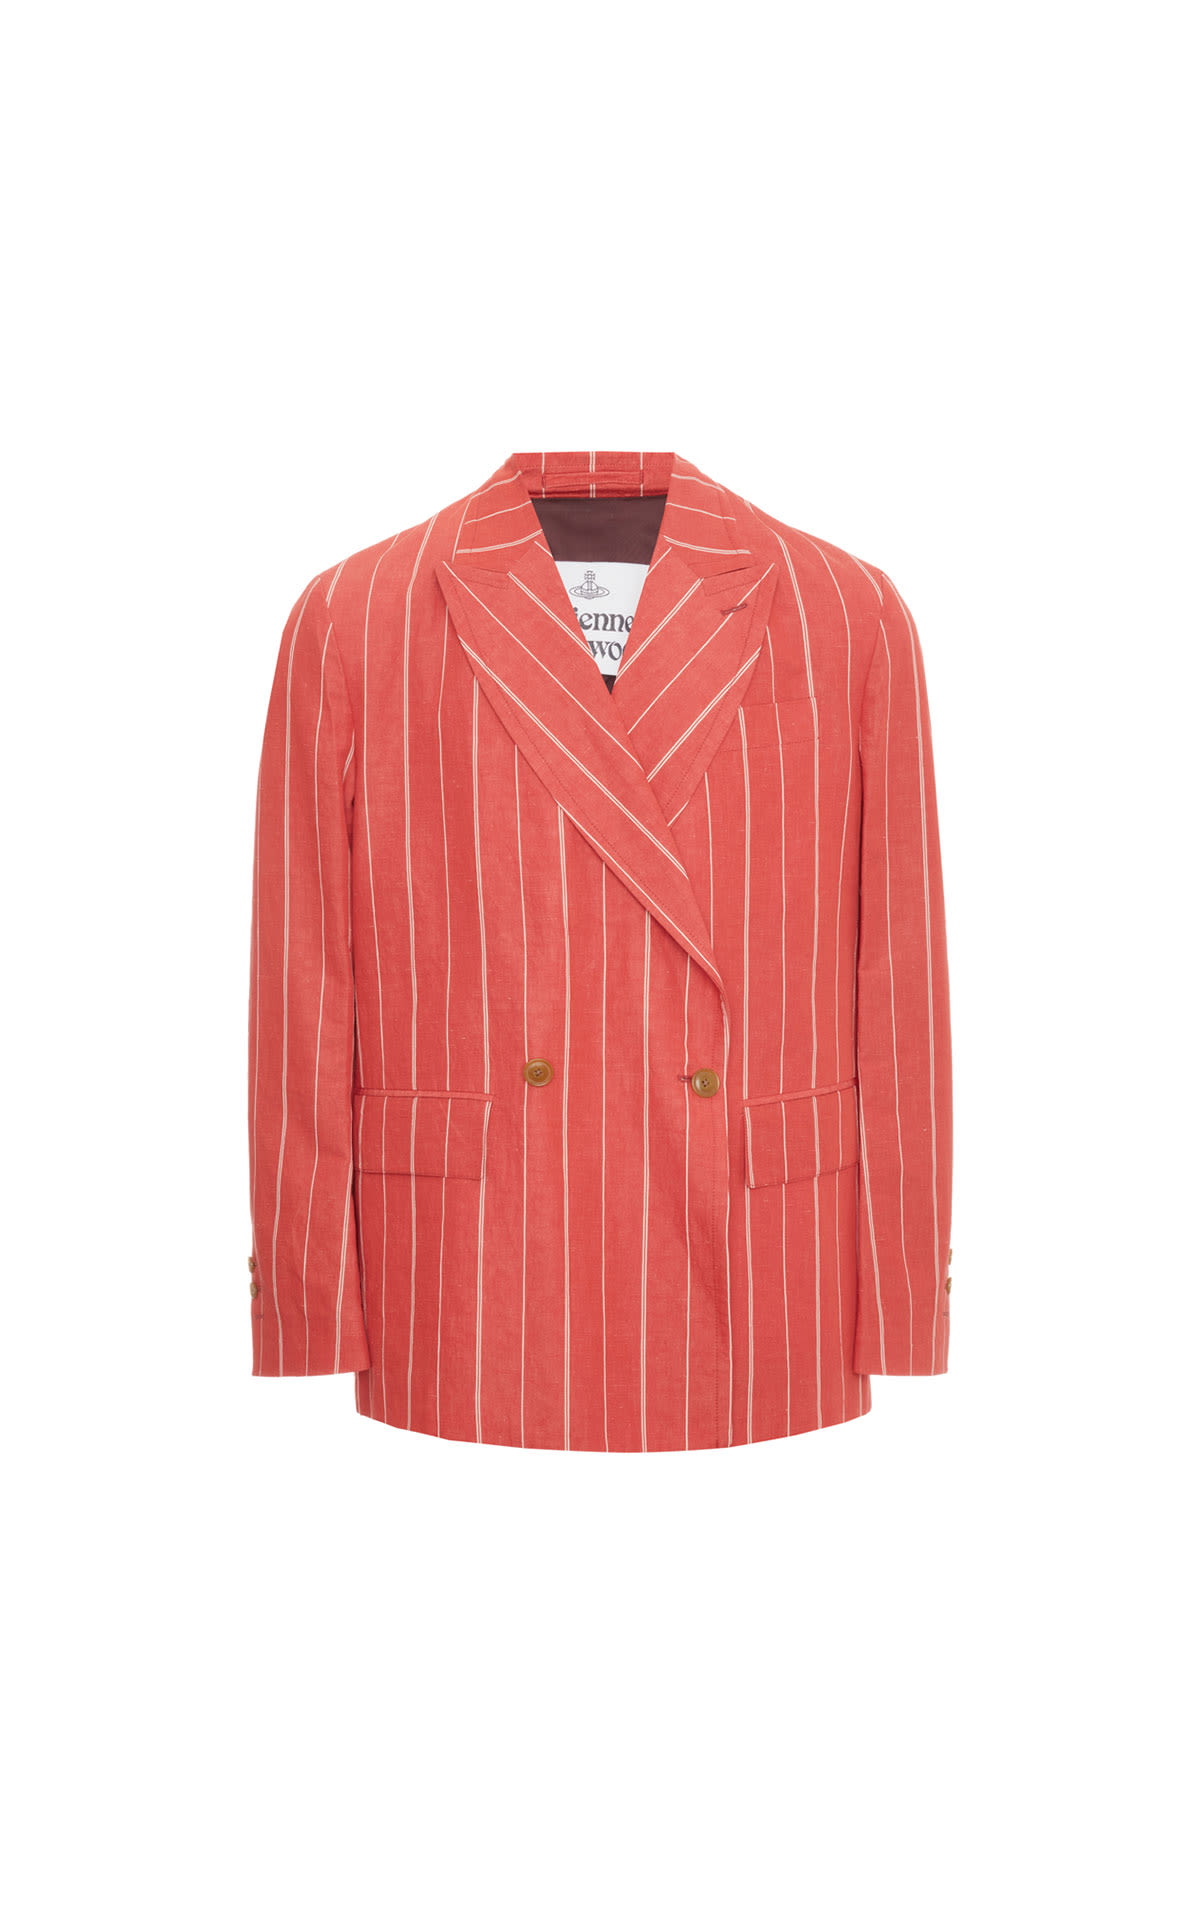 Vivienne Westwood Stripe blazer from Bicester Village